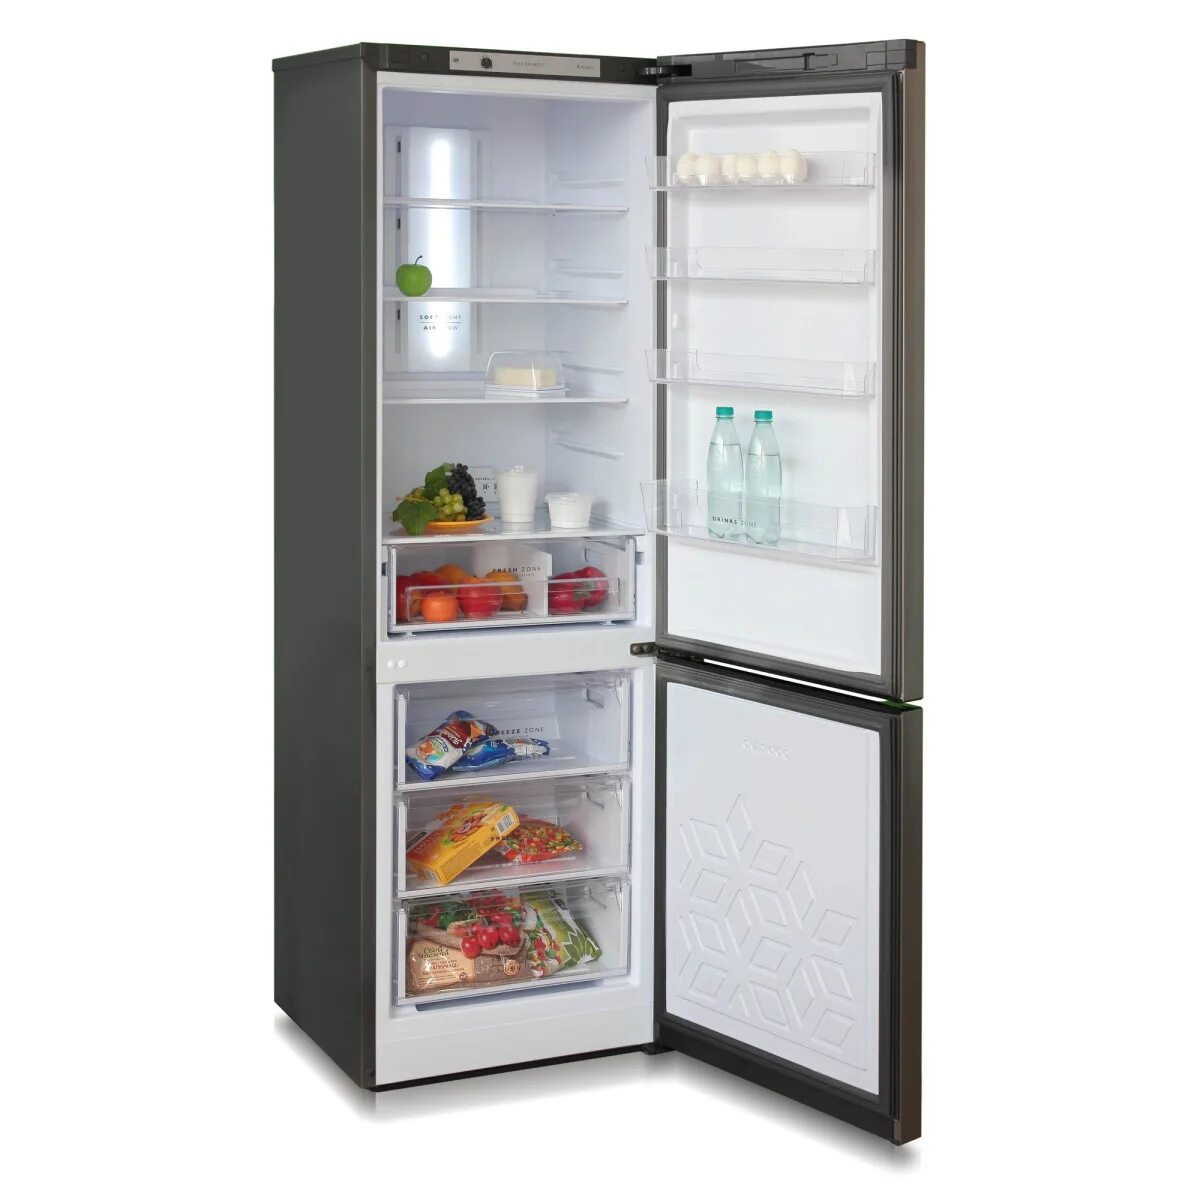 Холодильник Бирюса g380nf. Холодильник Бирюса 380nf. Холодильник Бирюса g320nf. Холодильник Бирюса w840nf. Бирюса новосибирске купить